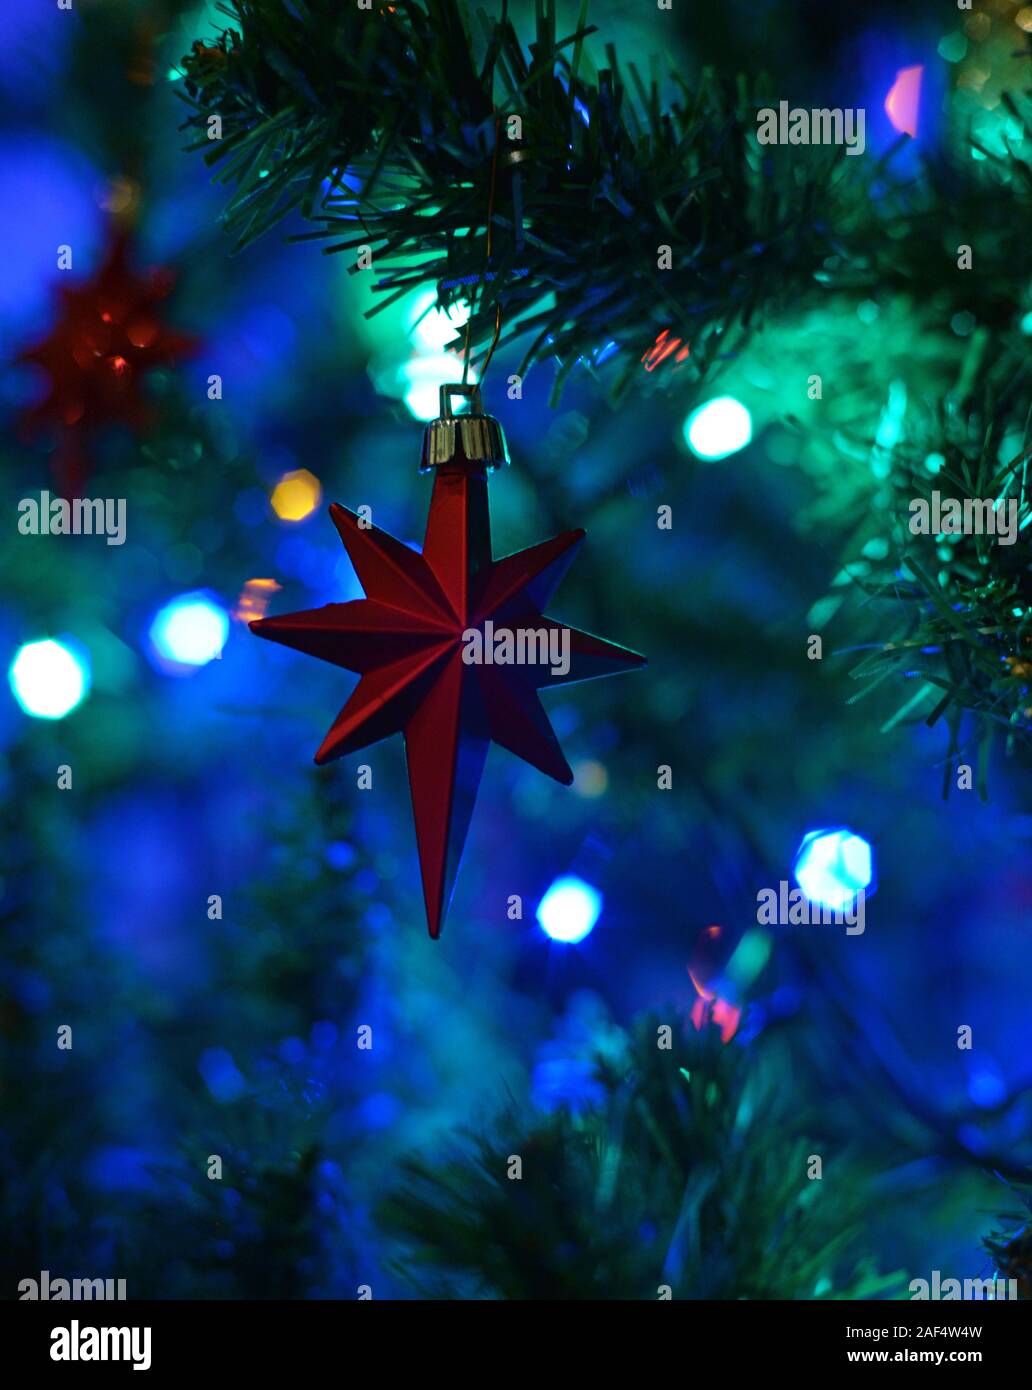 Étoile rouge accrochée à l'arbre de Noël. Bokeh. Concept : la saison de fête. Banque D'Images